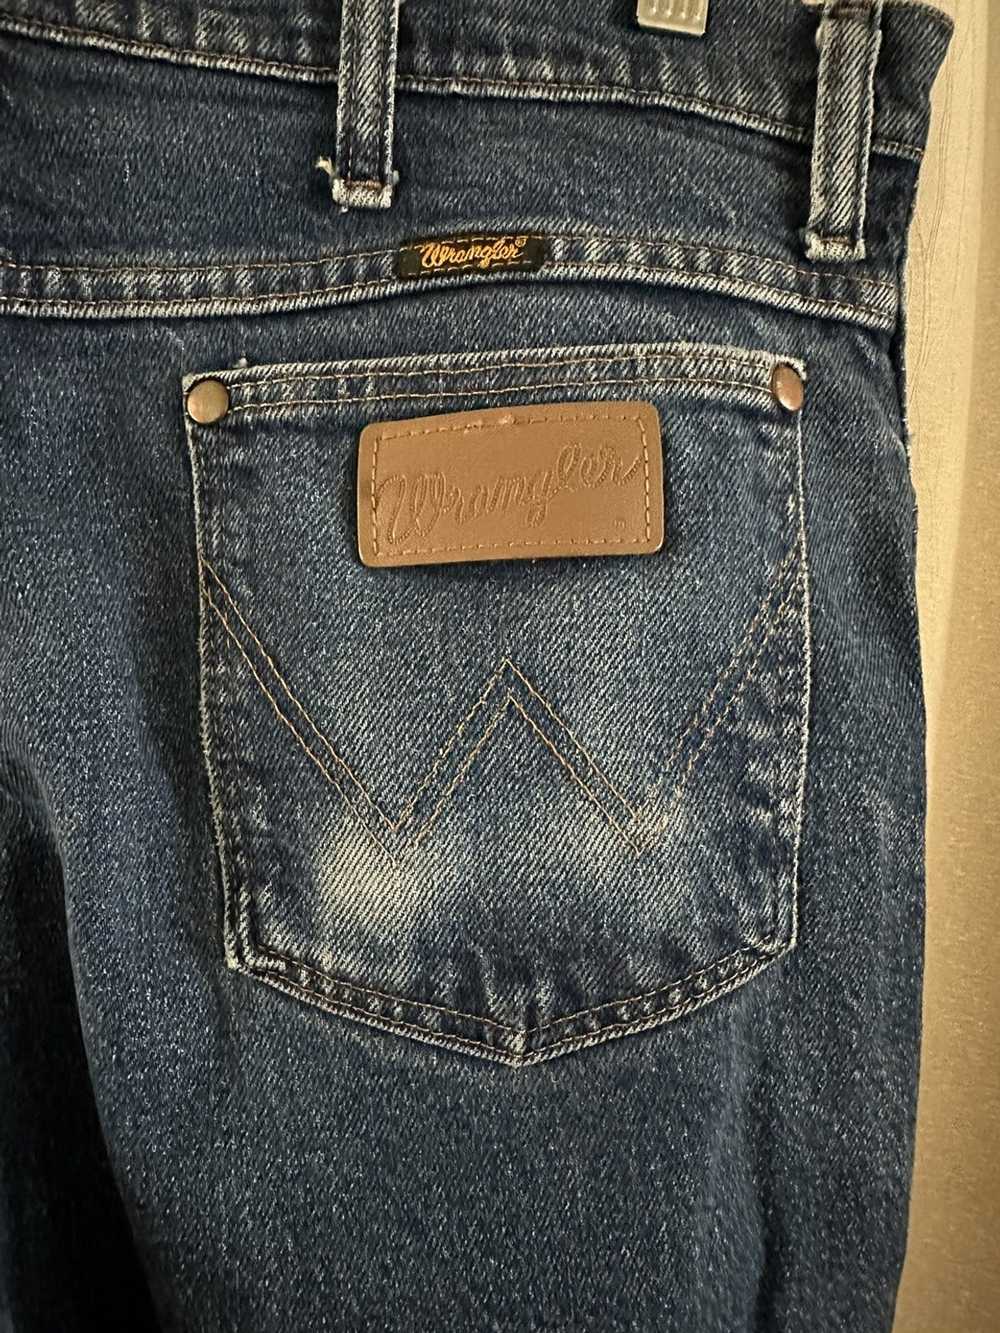 Vintage × Wrangler Vintage wrangle jeans - image 4